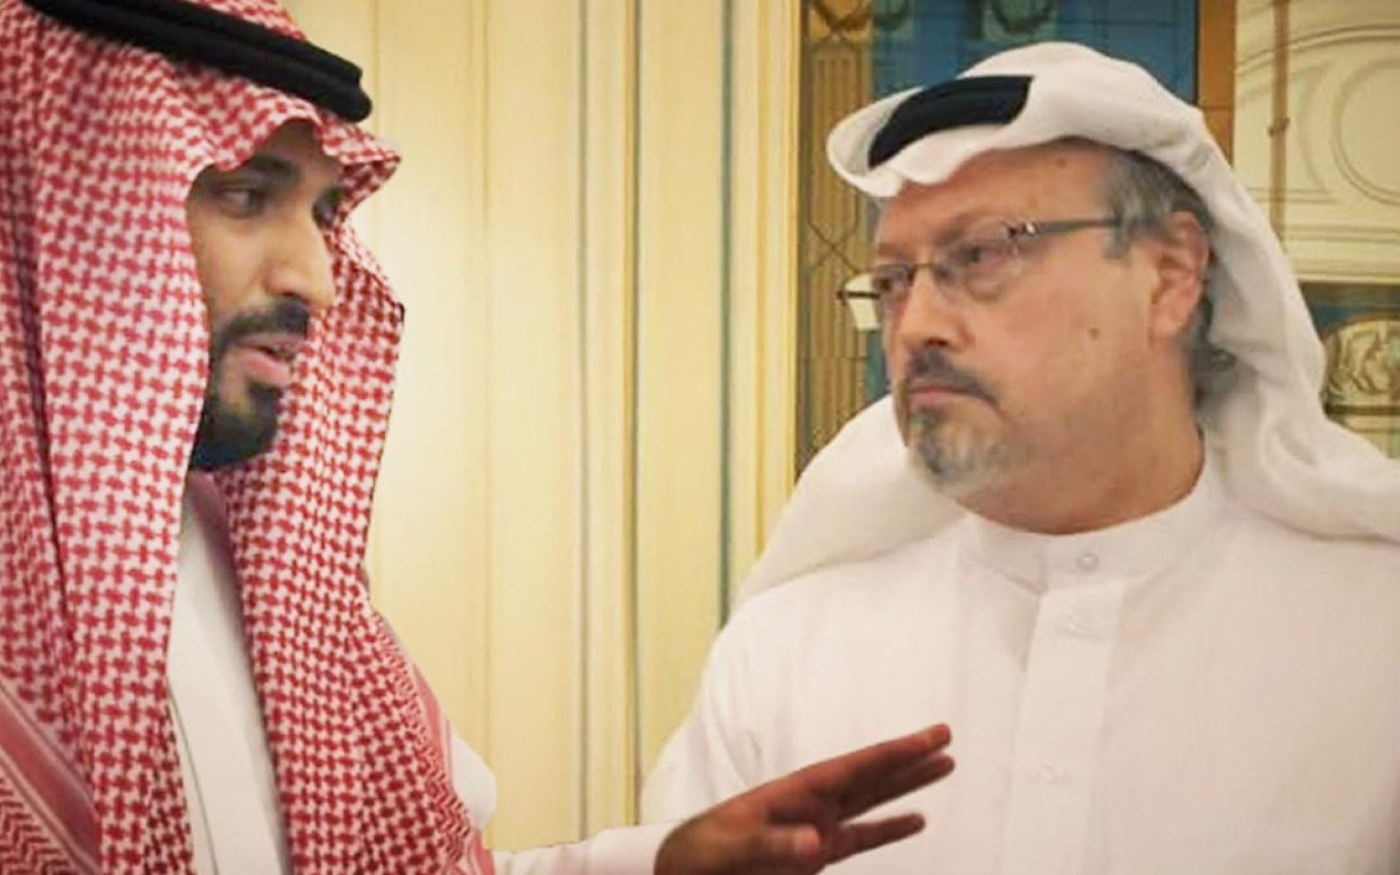 Image tirée de The Dissident montrant le prince héritier Mohammed ben Salmane (gauche) et le journaliste Jamal Khashoggi (Briarcroft/Hanway)